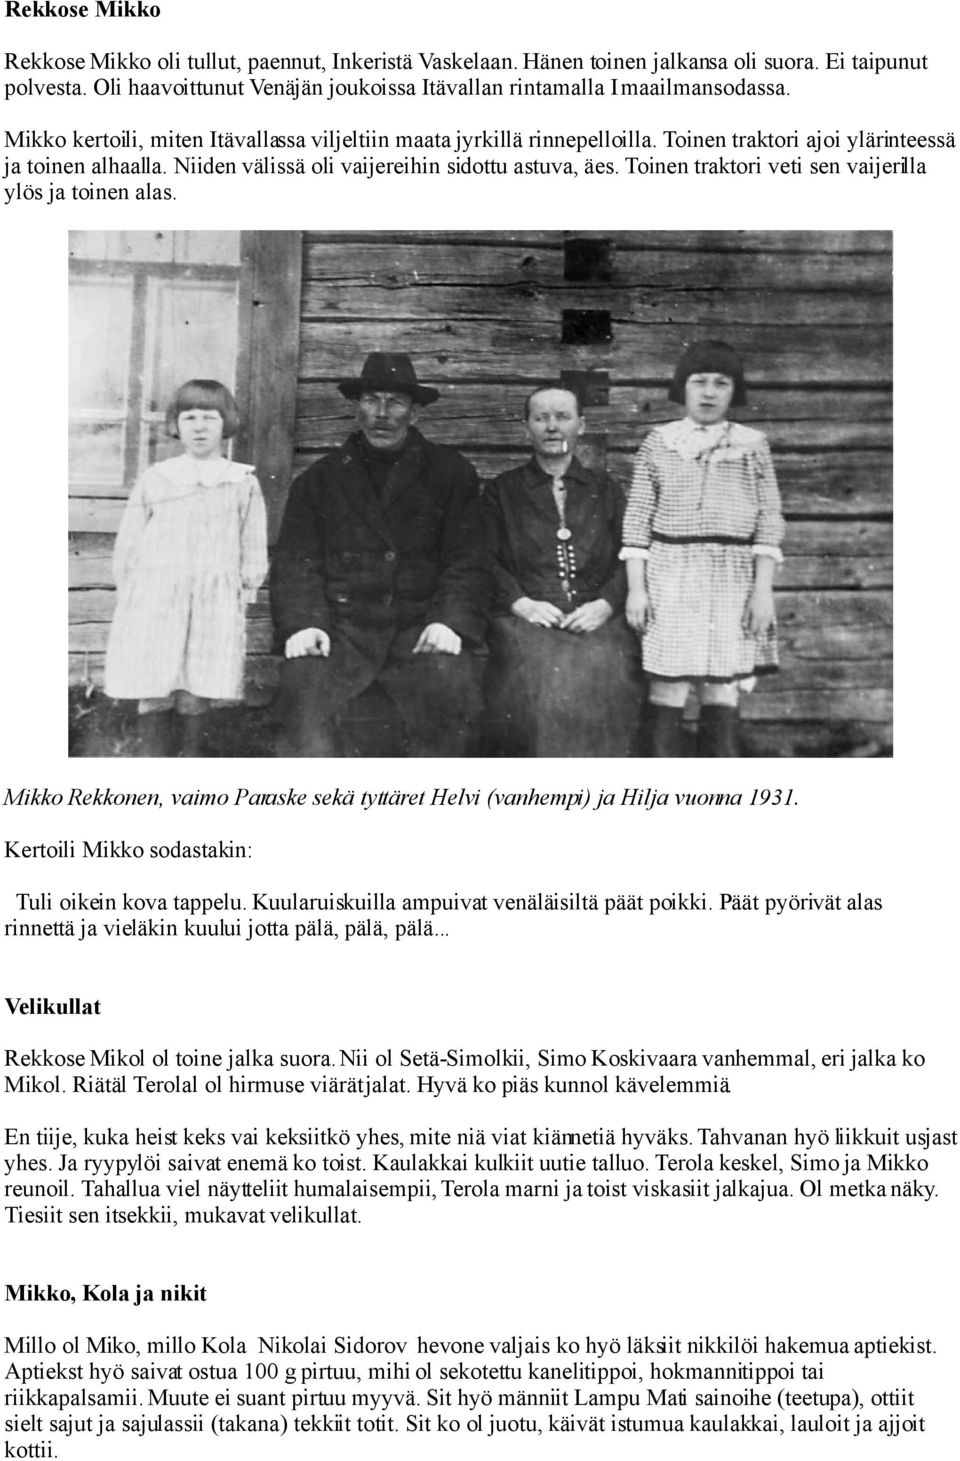 Toinen traktori veti sen vaijerilla ylös ja toinen alas. Mikko Rekkonen, vaimo Paraske sekä tyttäret Helvi (vanhempi) ja Hilja vuonna 1931. Kertoili Mikko sodastakin: Tuli oikein kova tappelu.